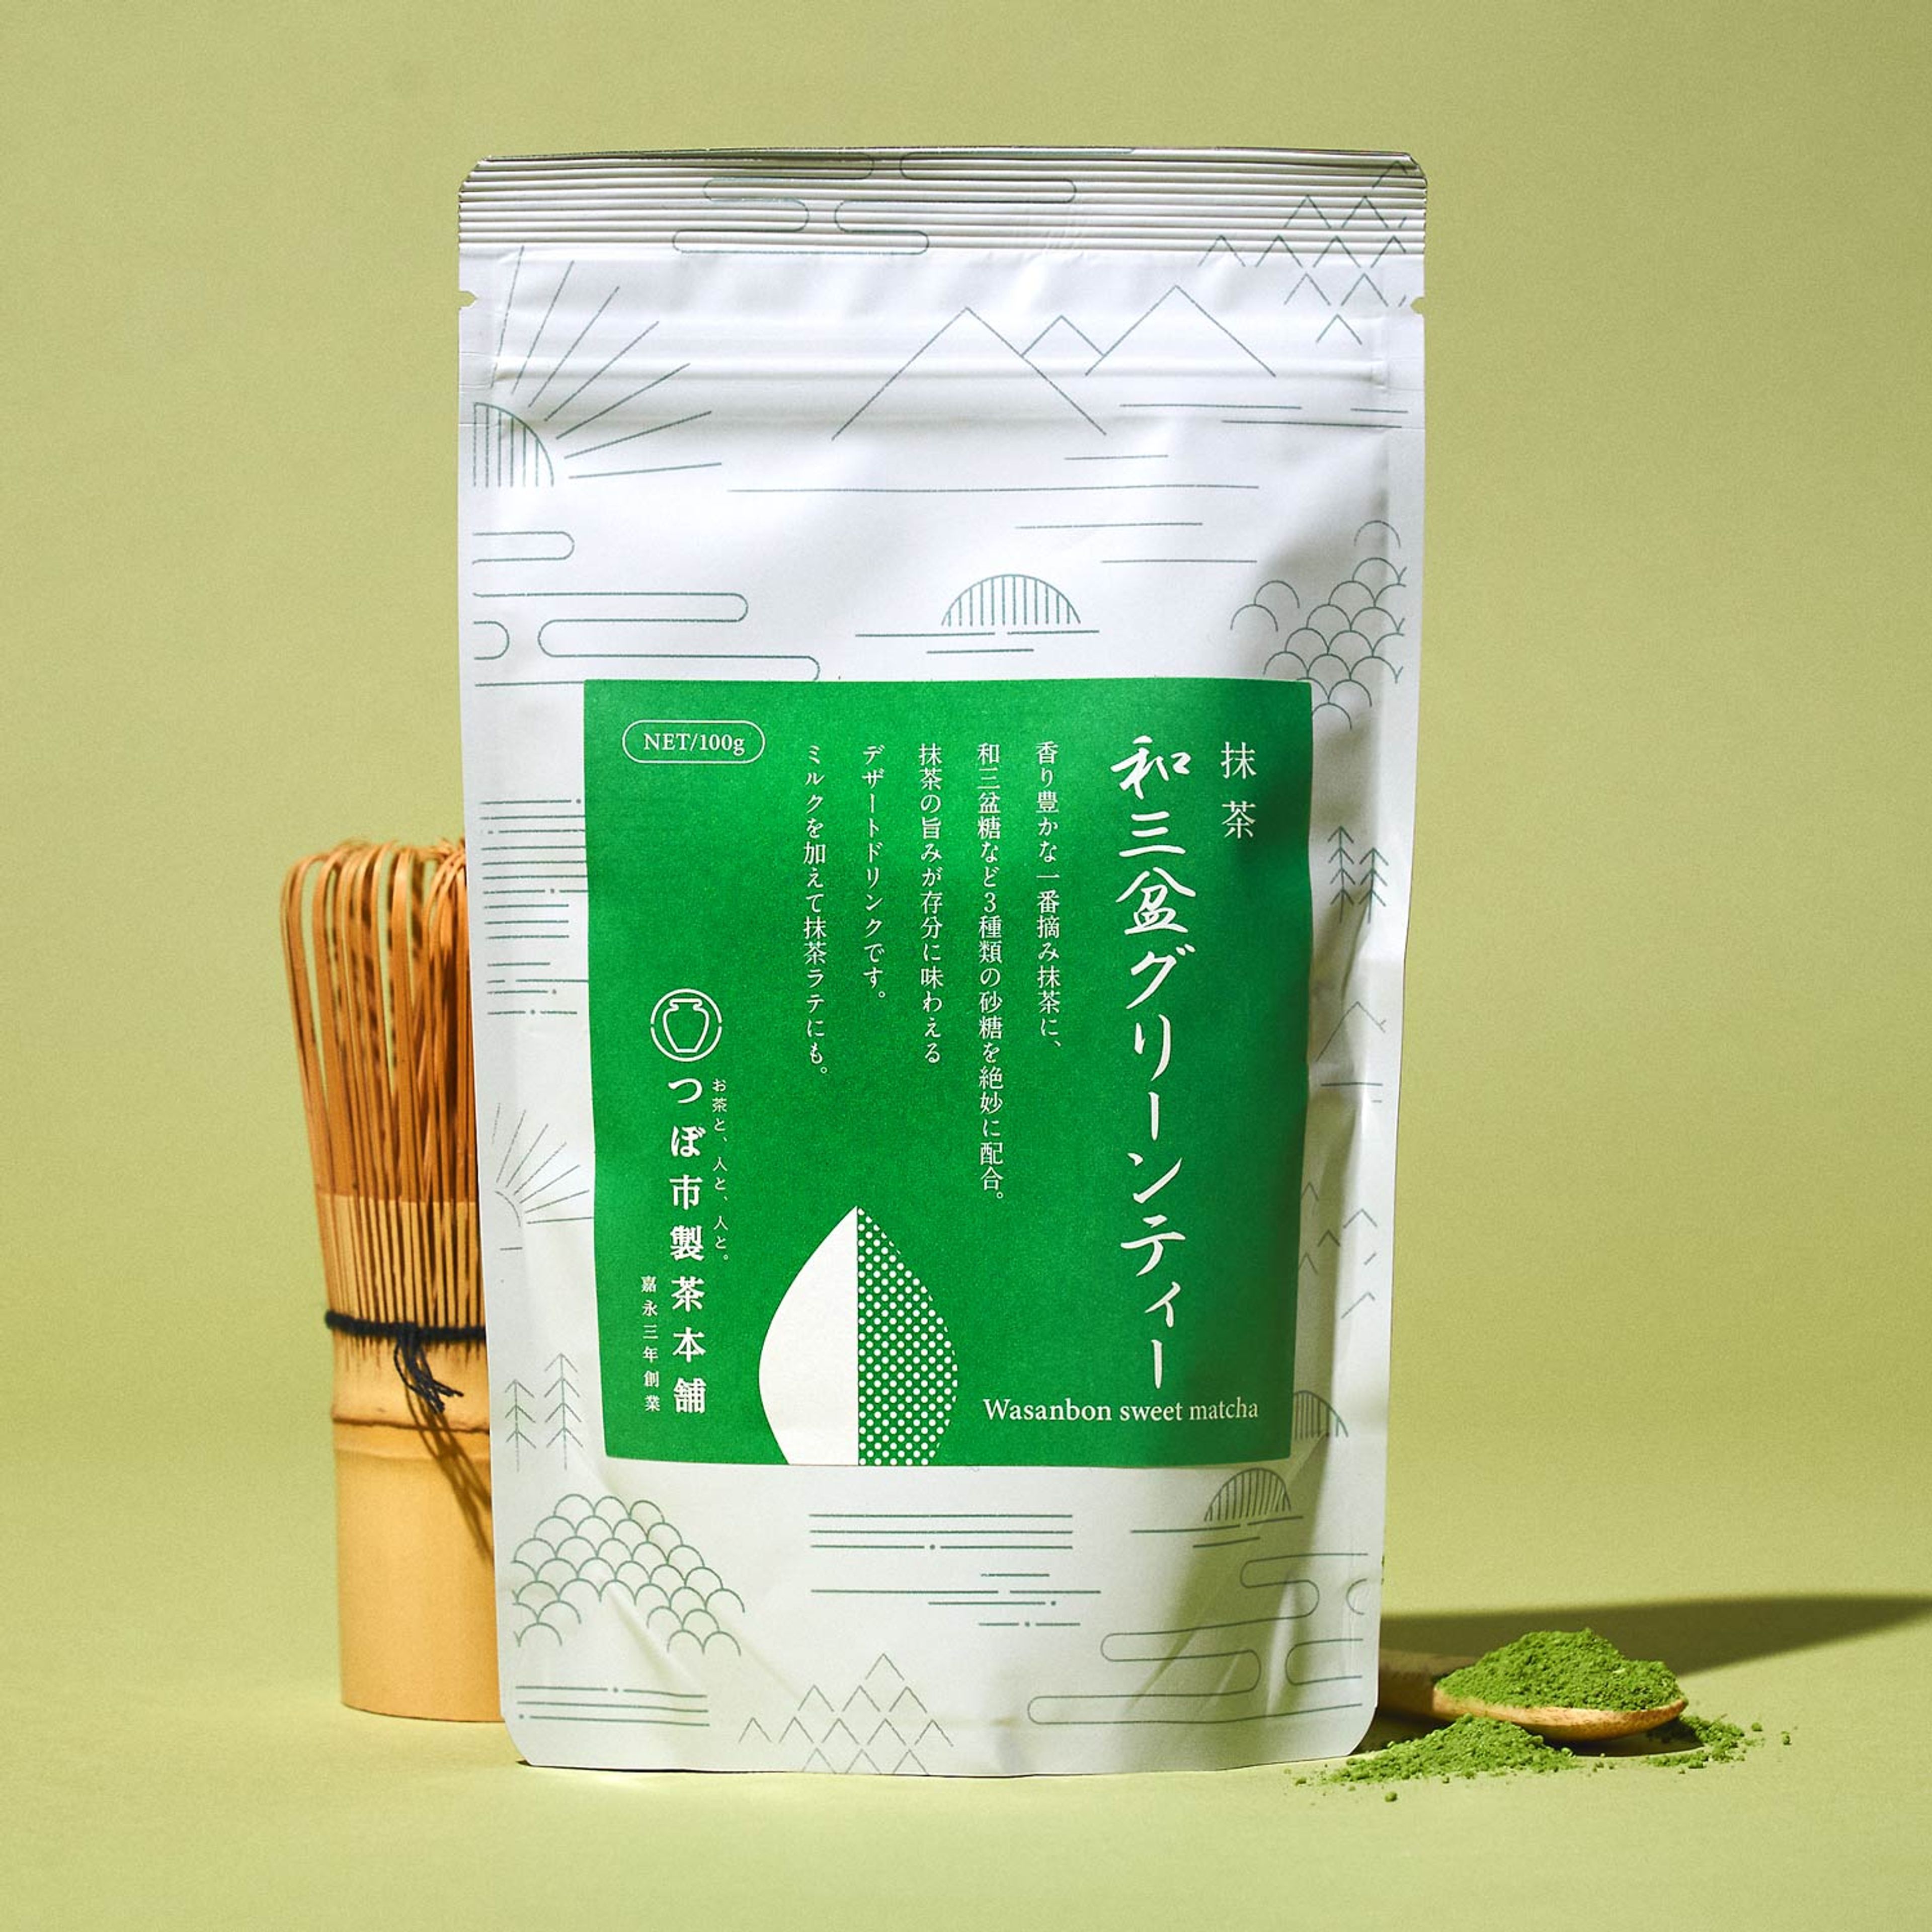 Wasanbon Matcha Green Tea Mix (1 Pack)